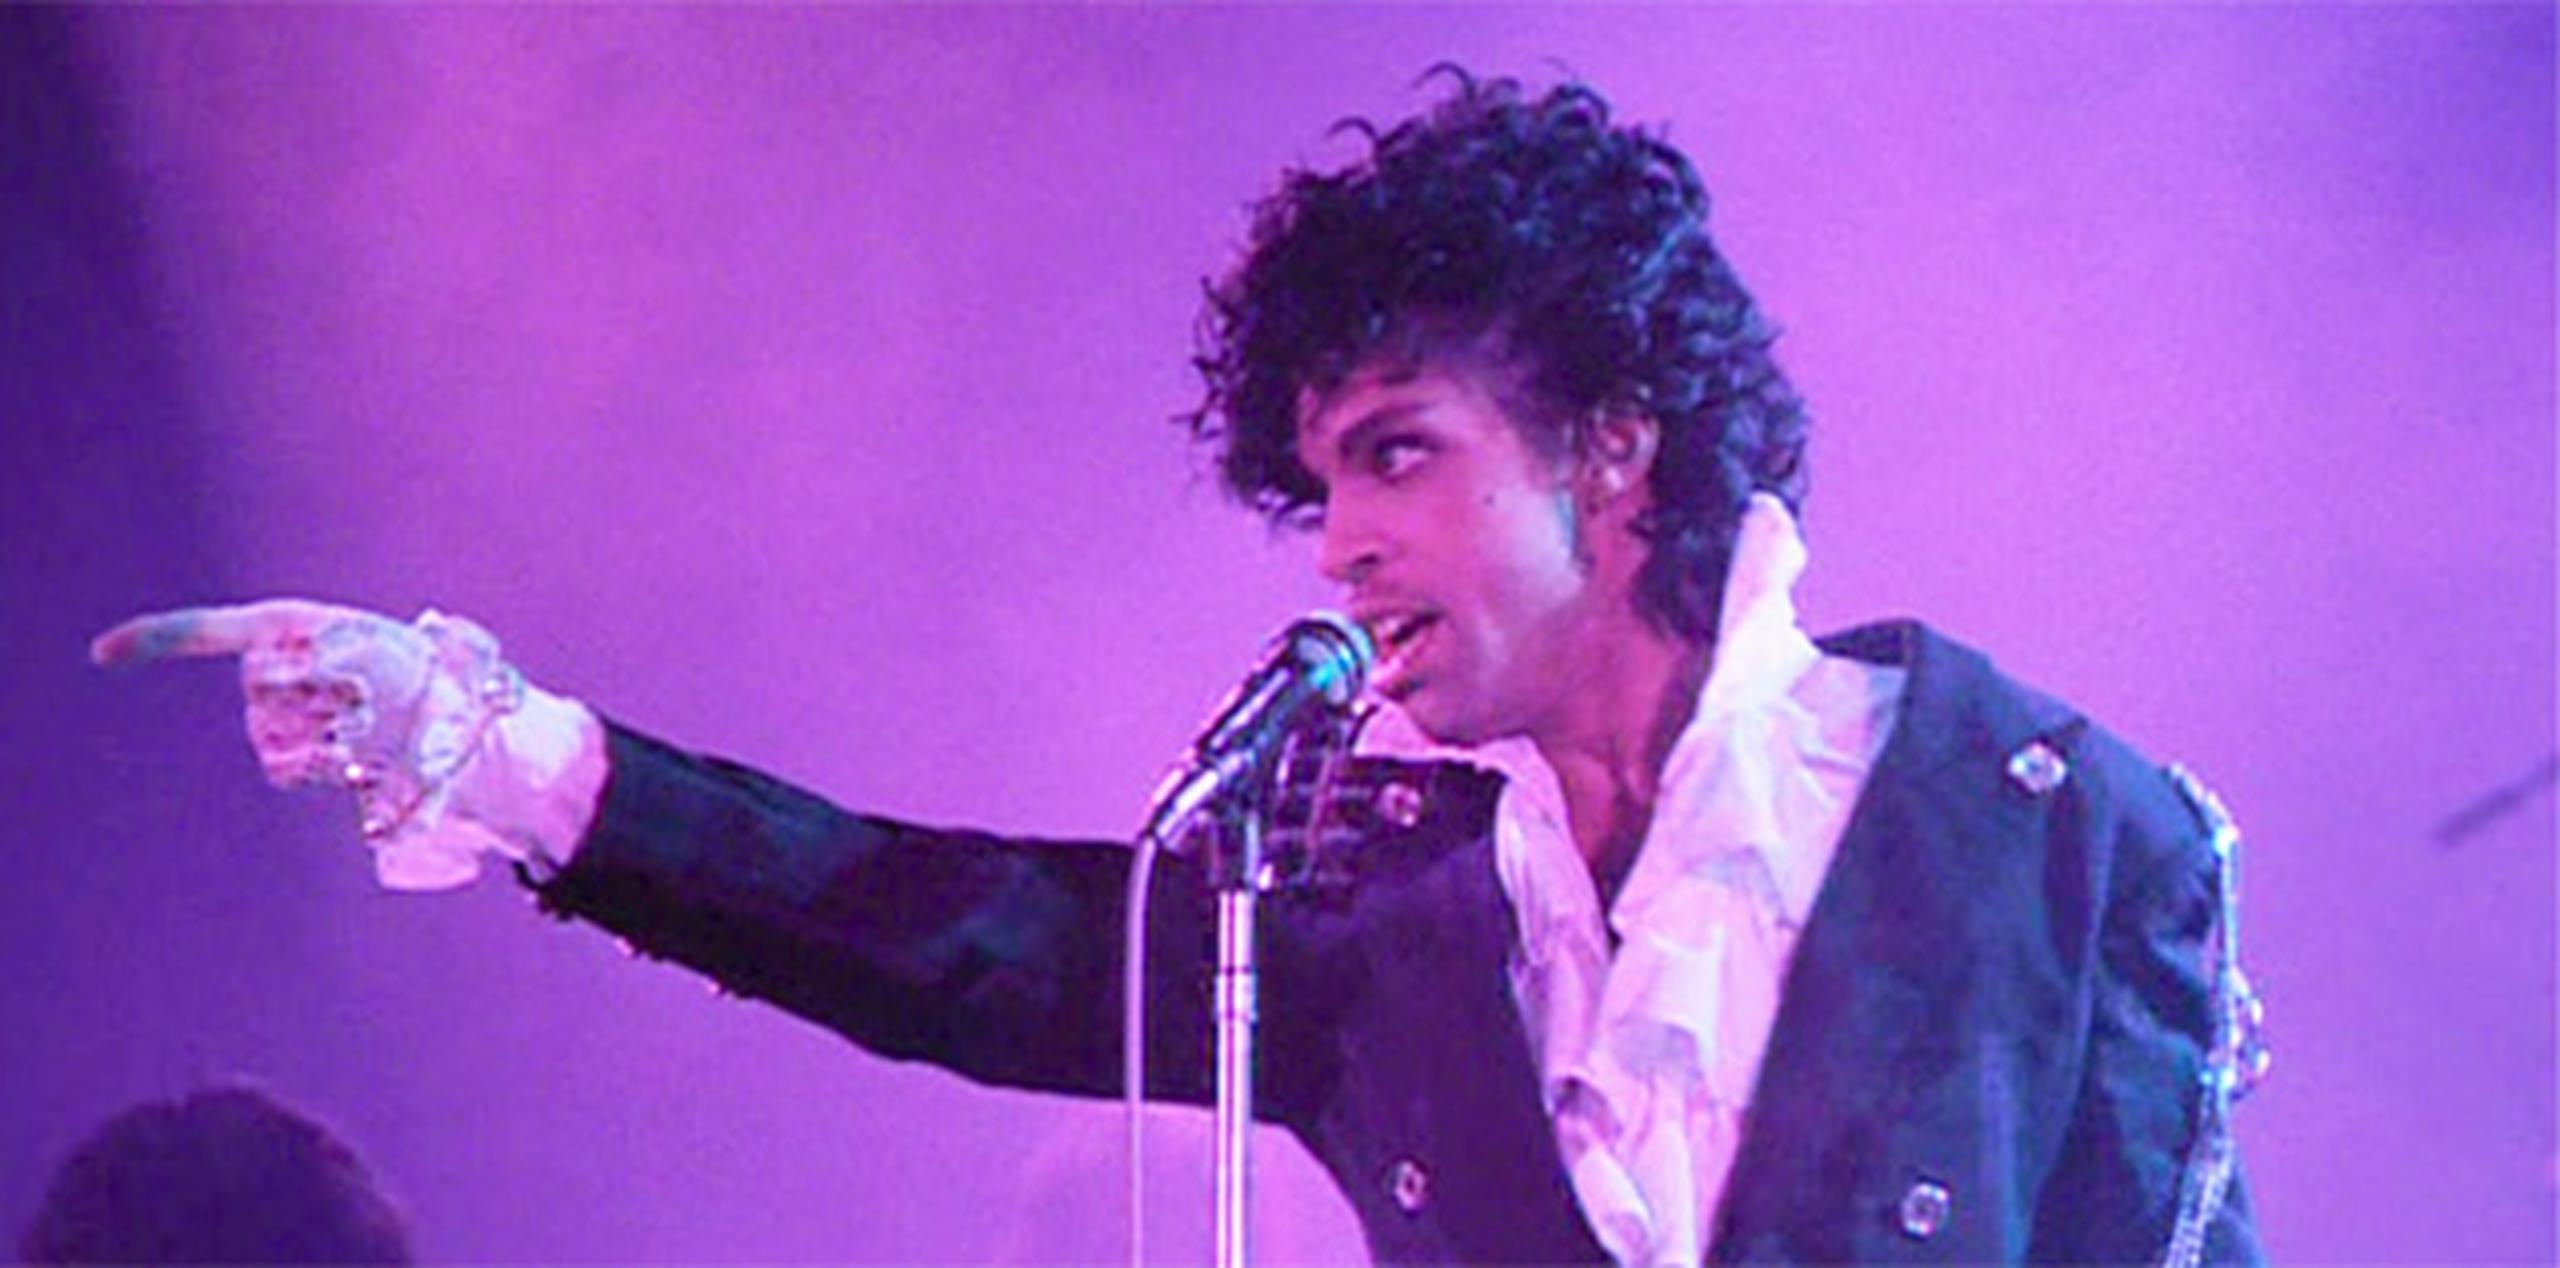 Para el momento en que apareció "Purple Rain" el mundo ya sabía quién era Prince.